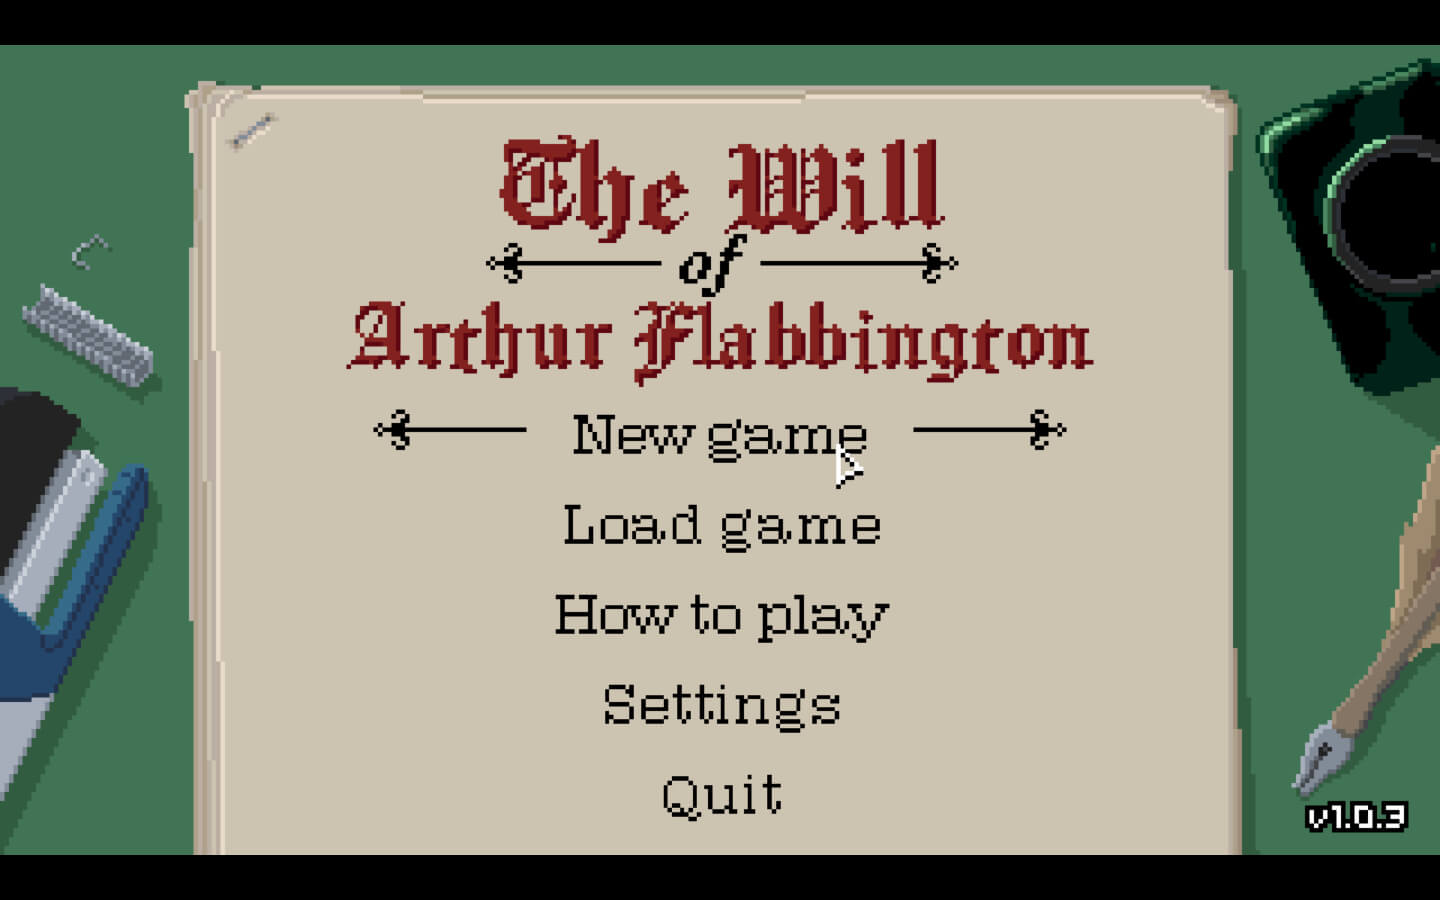 亚瑟·弗拉宾顿的遗嘱 for Mac The Will of Arthur Flabbington v2 英文原生版 苹果电脑